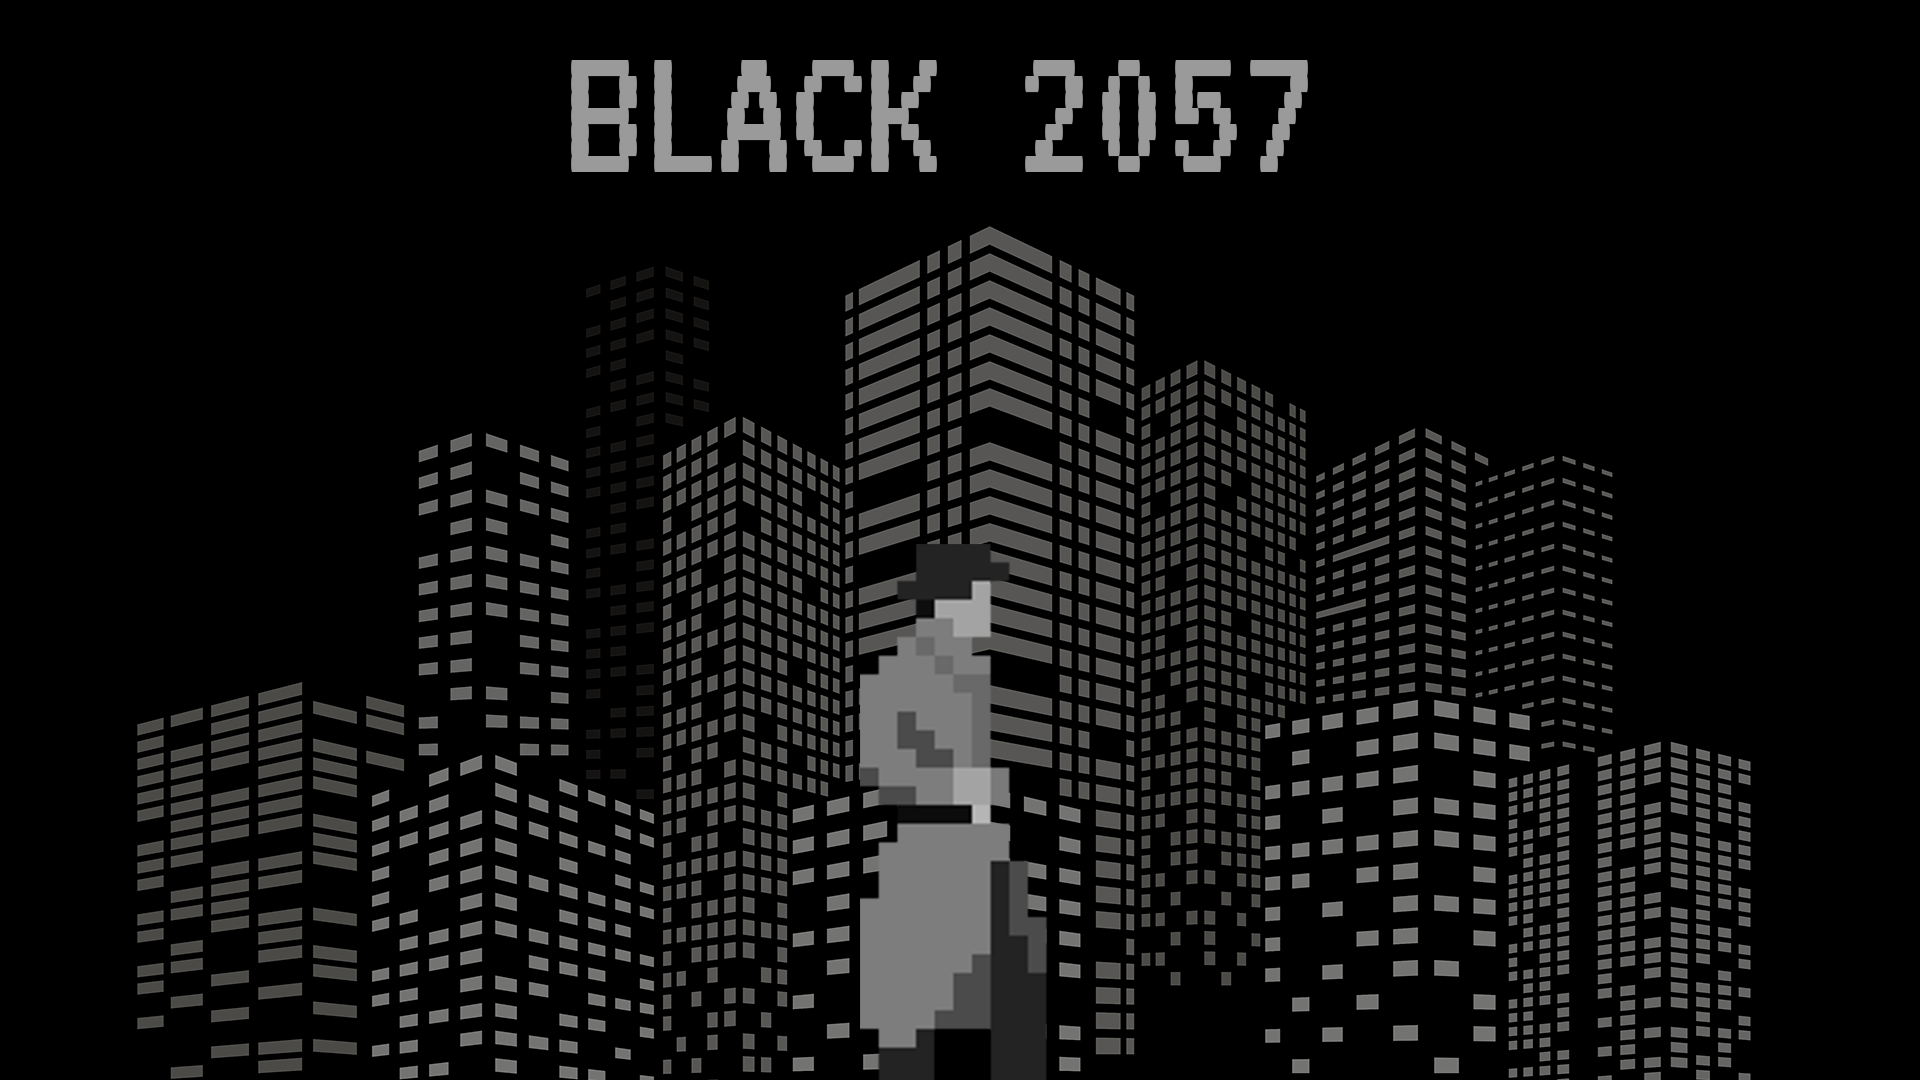 Black 2057